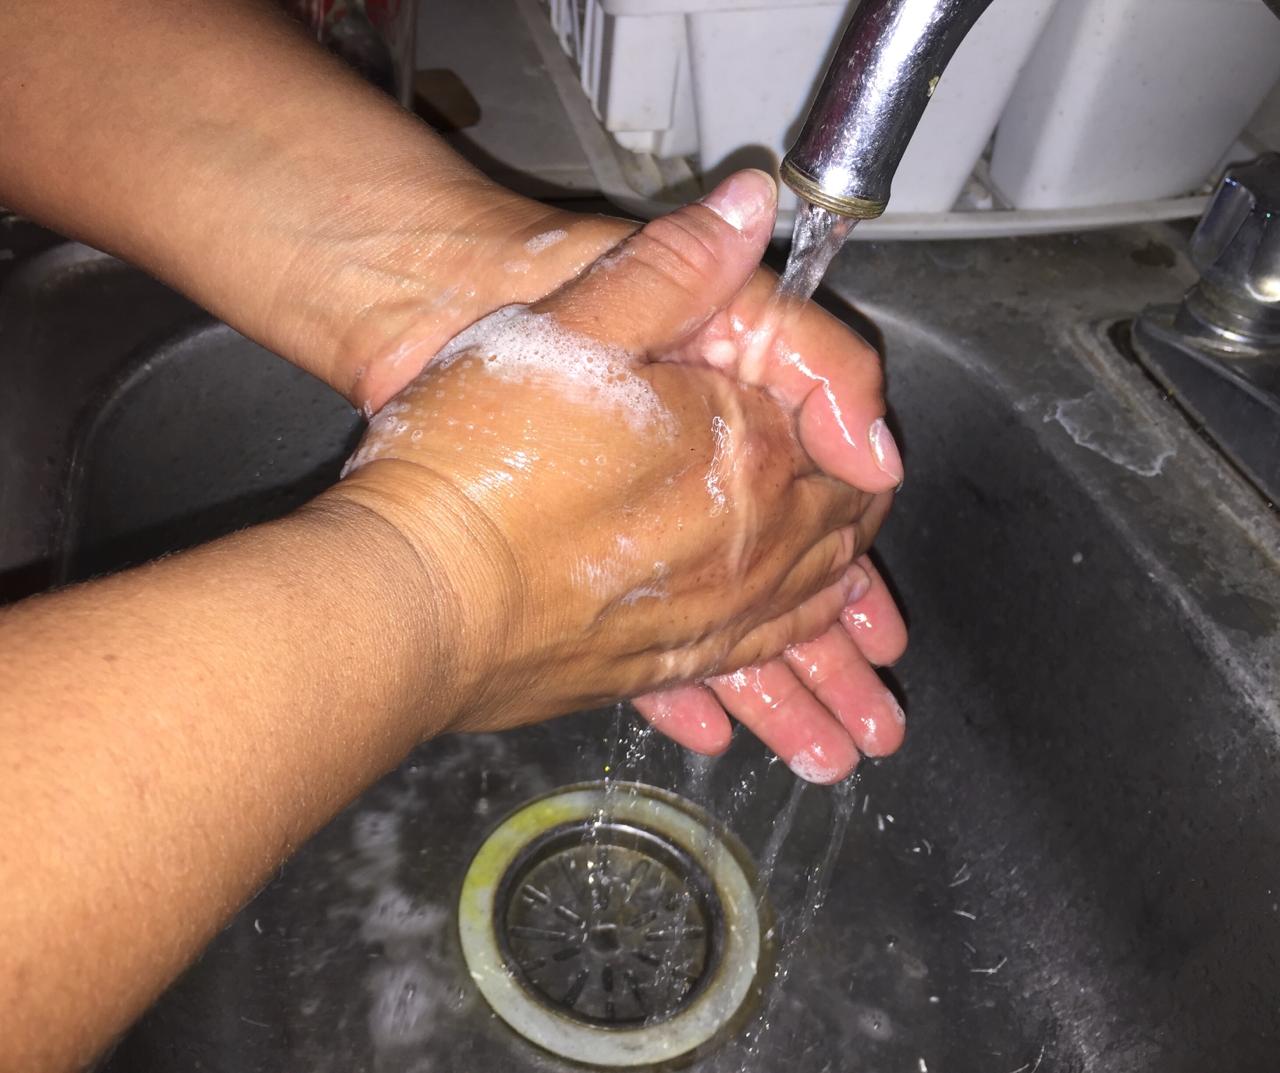 Correcto lavado de manos reduce hasta 50 por ciento enfermedades diarreicas en temporada de calor